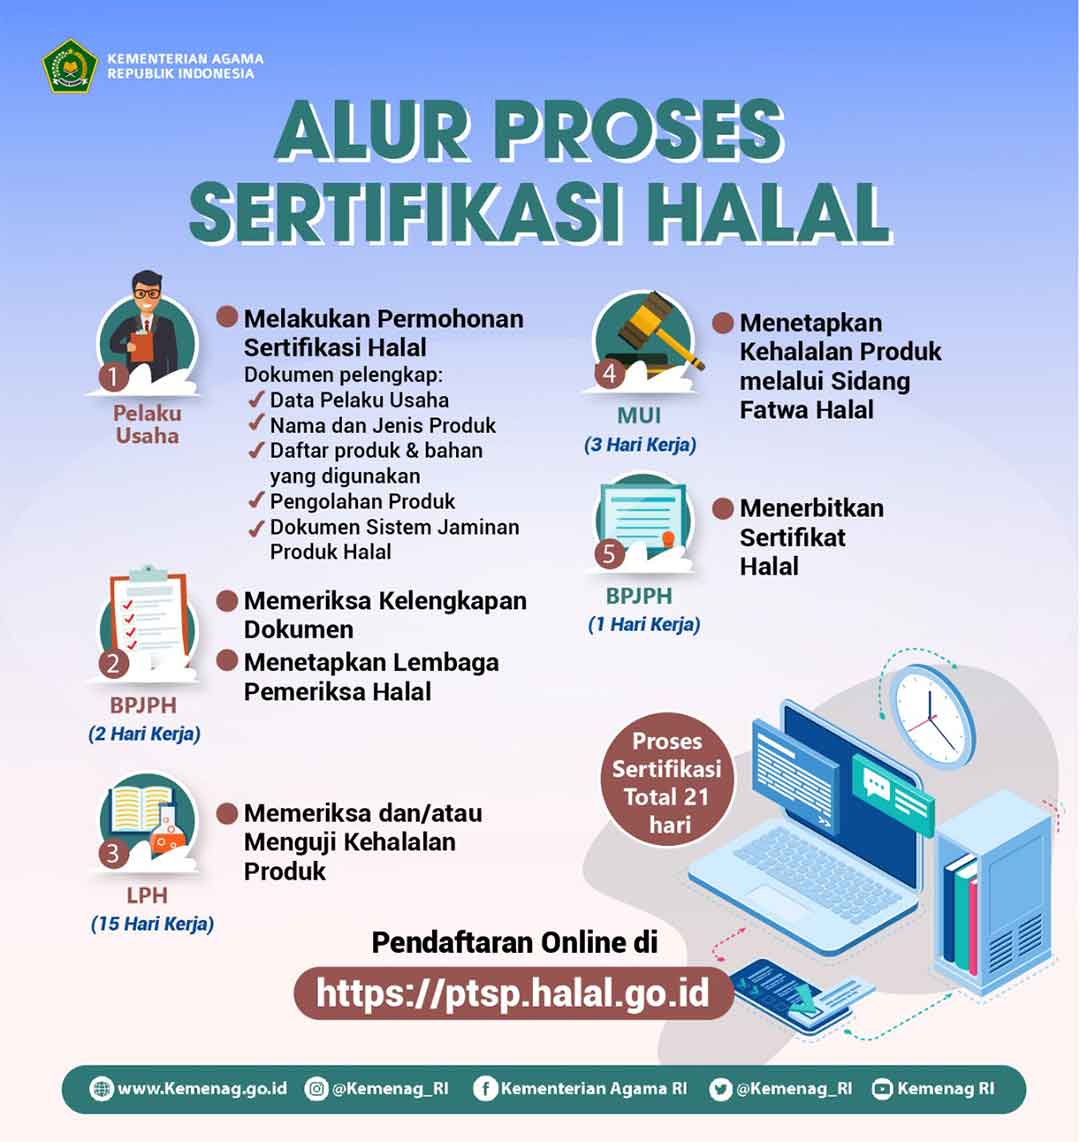 Alur Proses Sertifikasi Halal Indonesia Terbaru, Download juga Logonya!